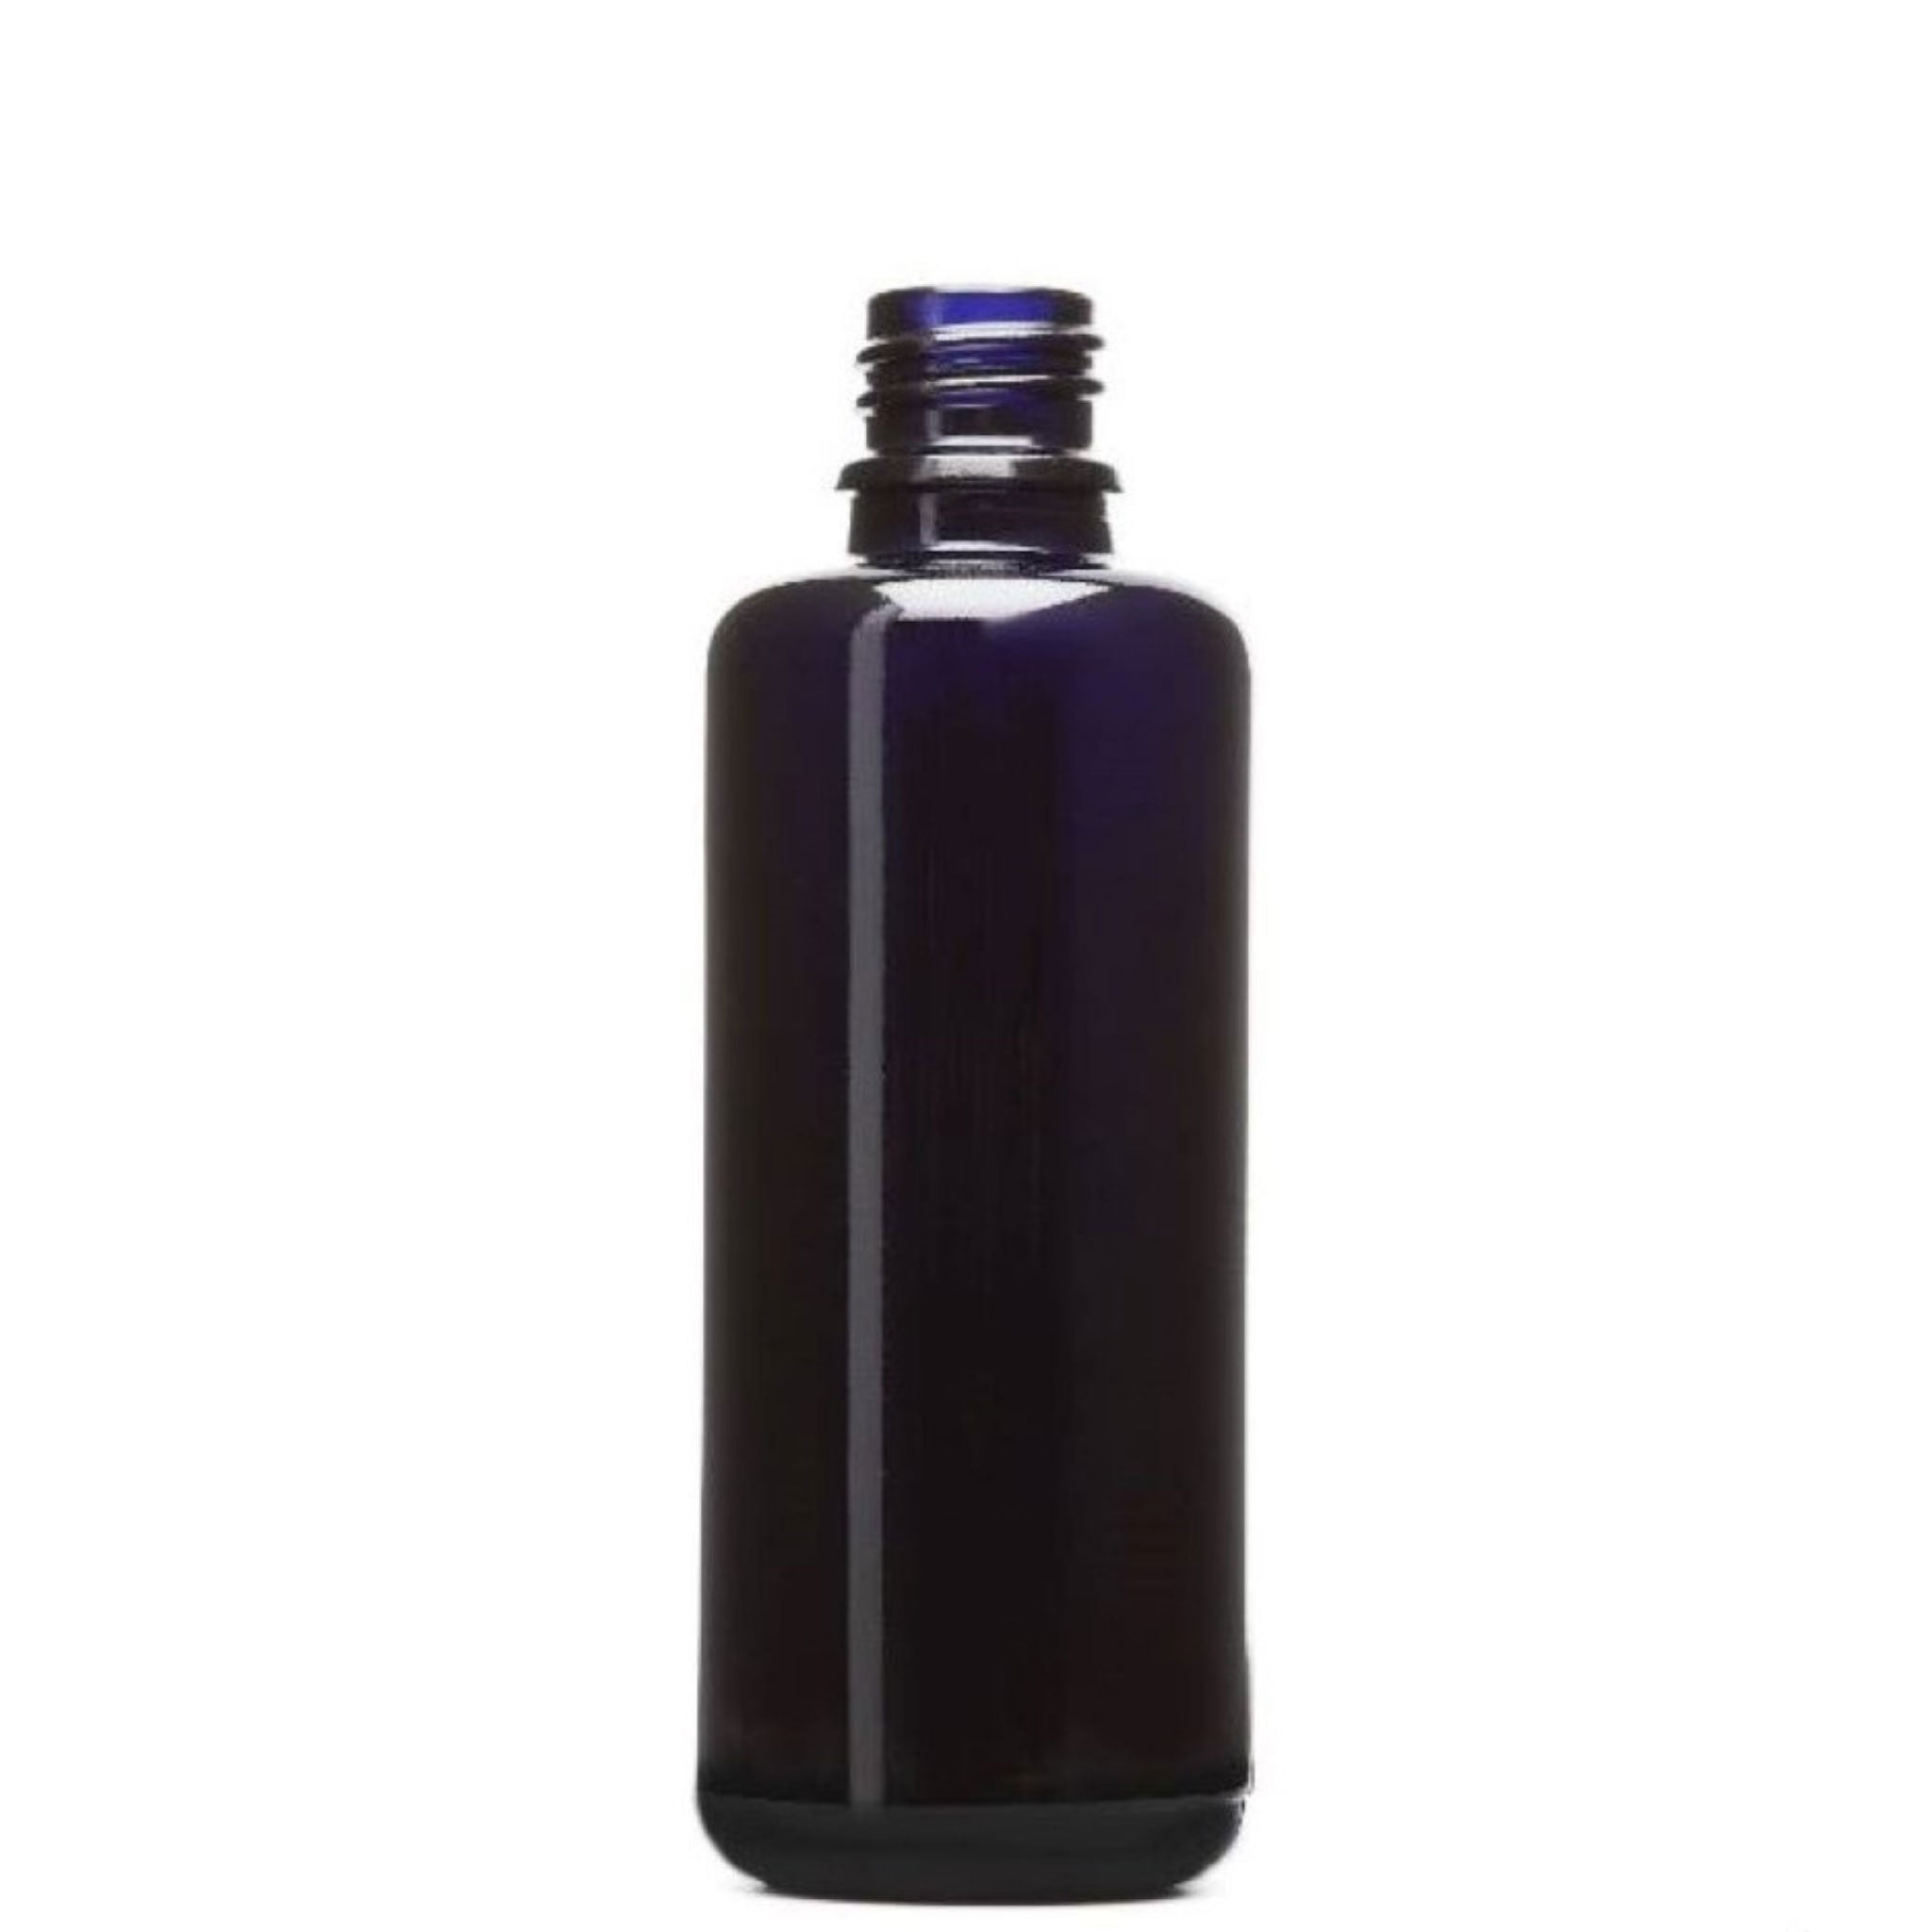 violet glass bottles